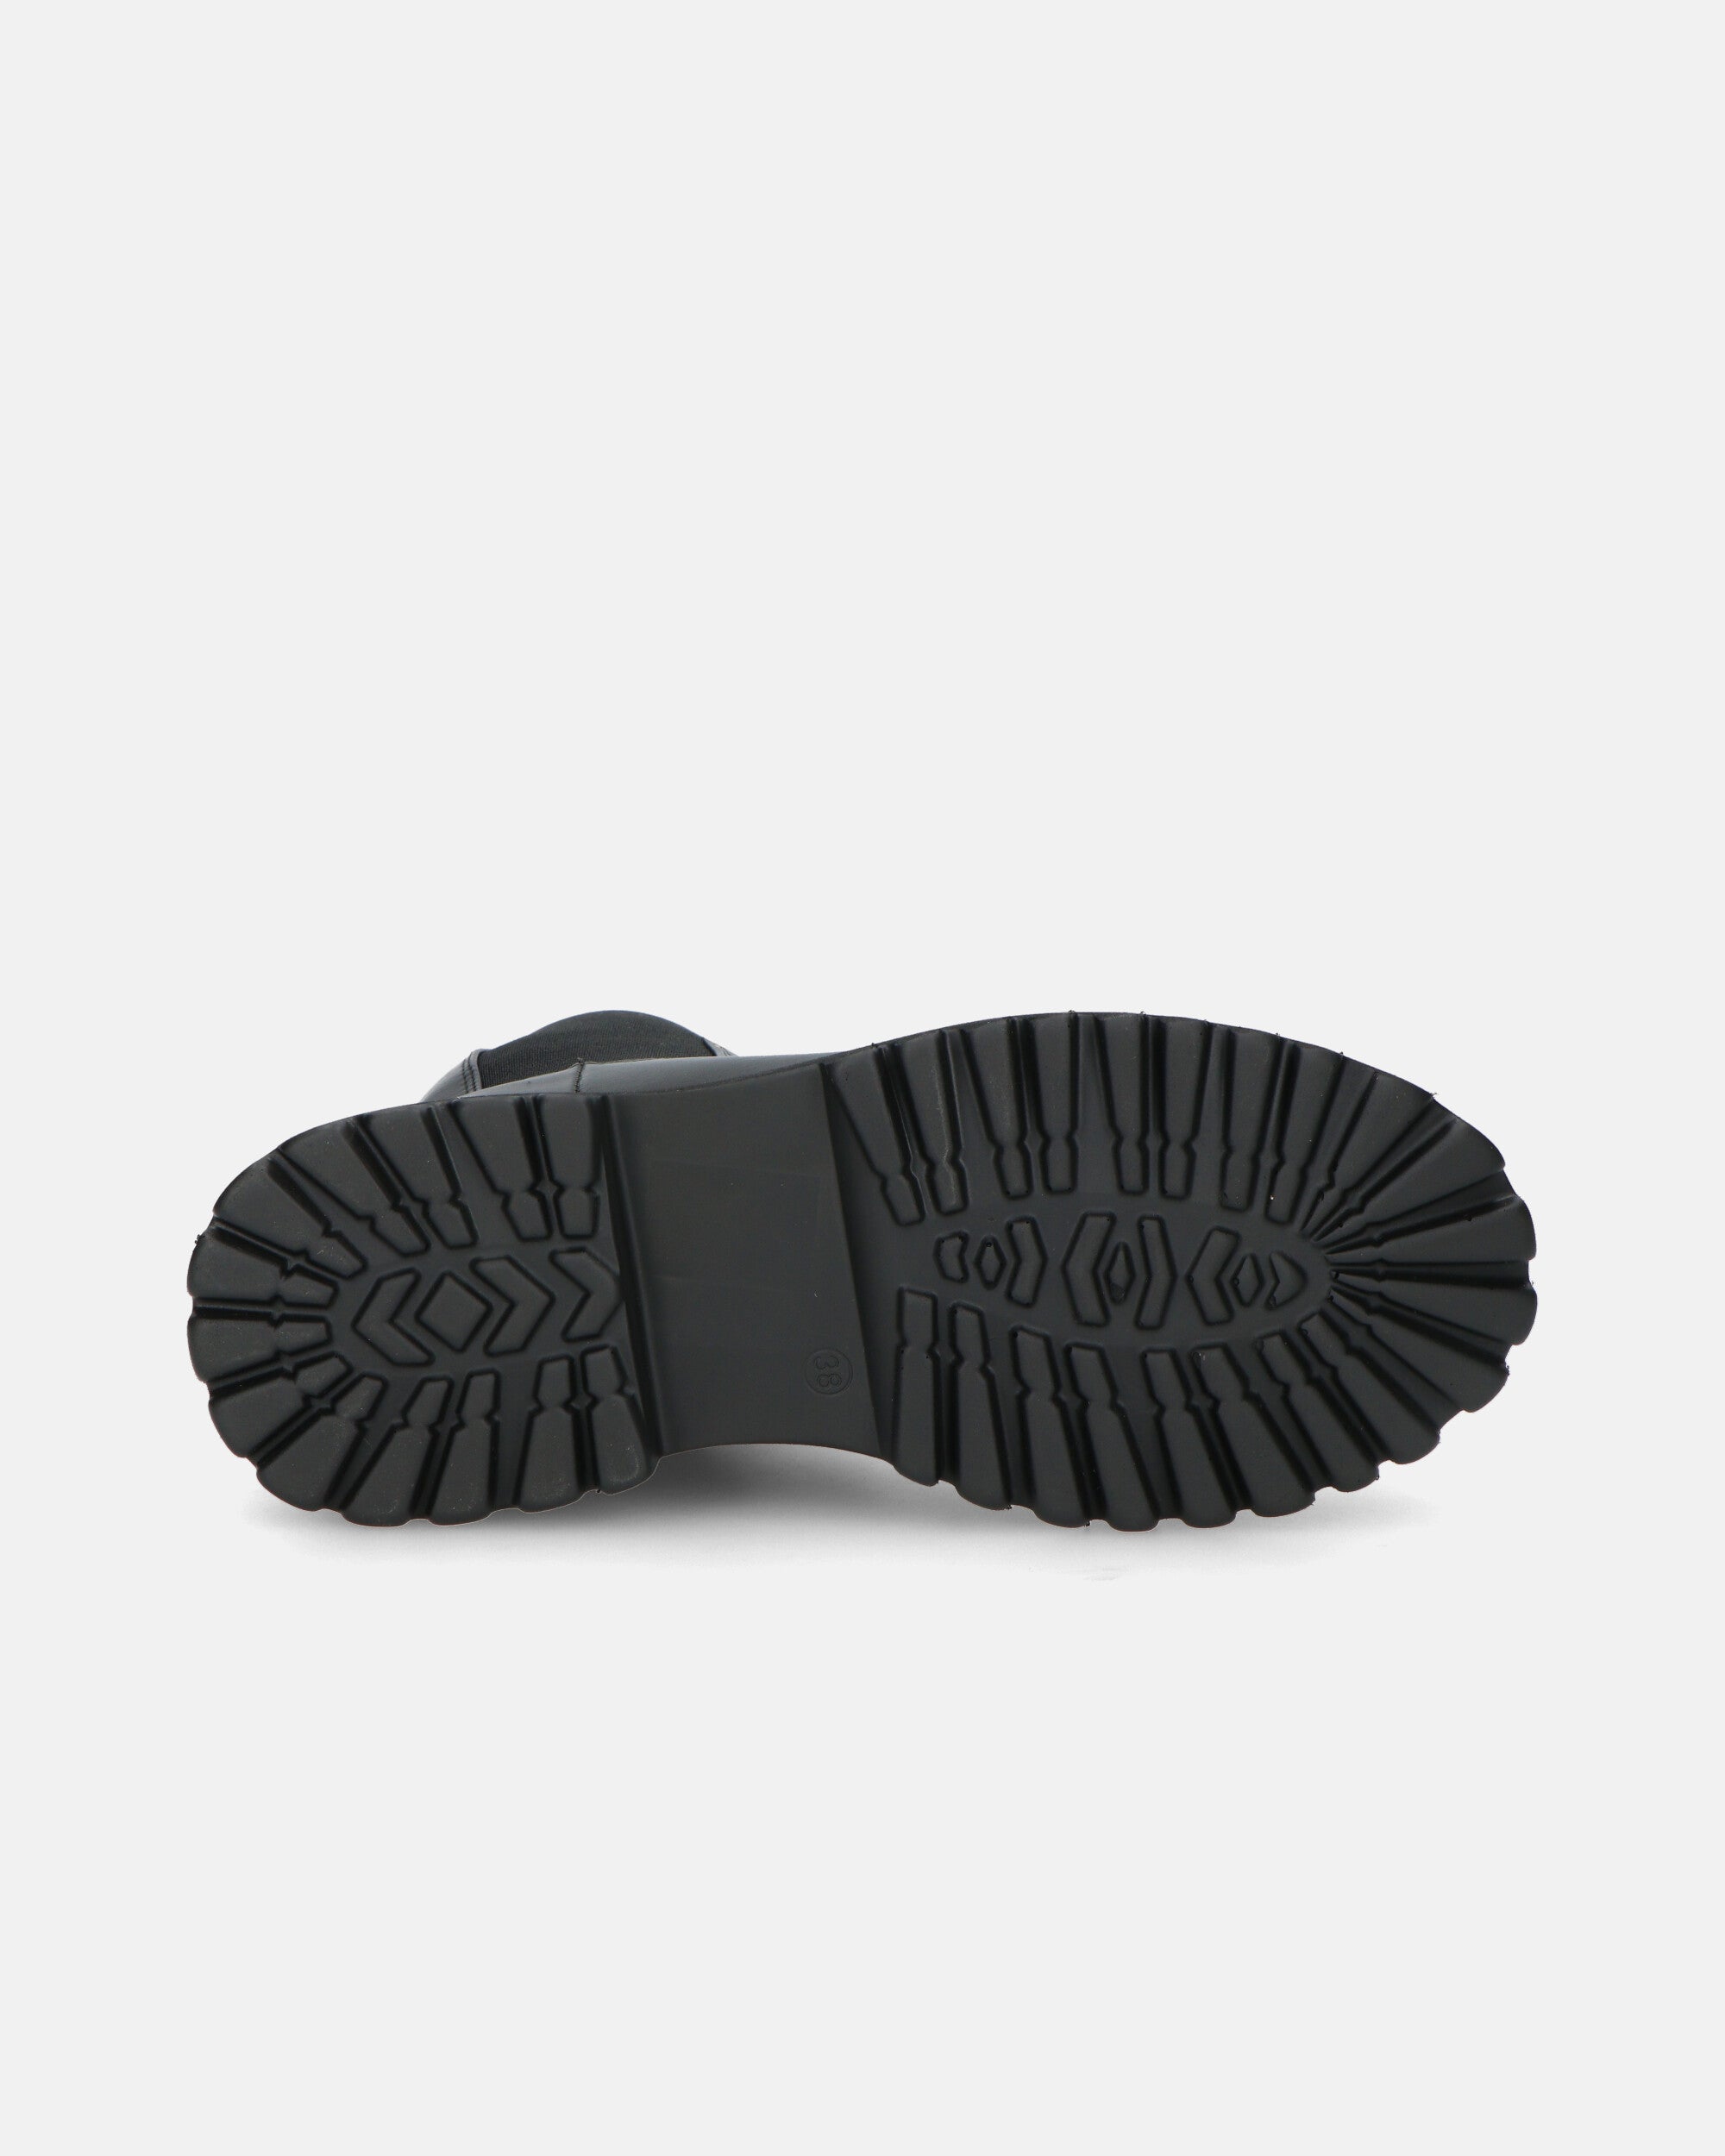 MINA - bottines noires style amphibie avec élastique